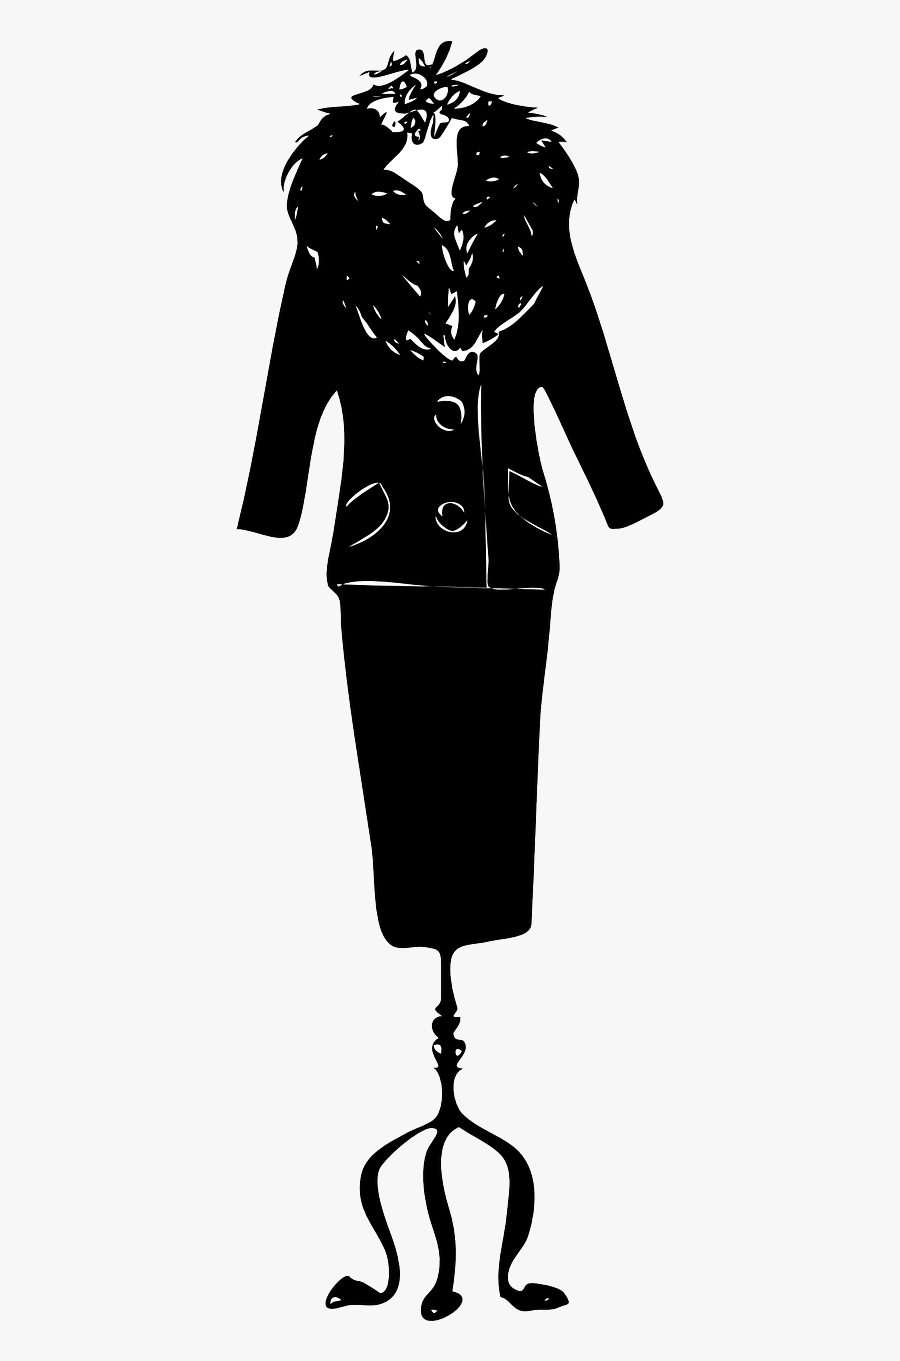 Black Woman Suit - Ladies Suit Hd Clipart, Transparent Clipart